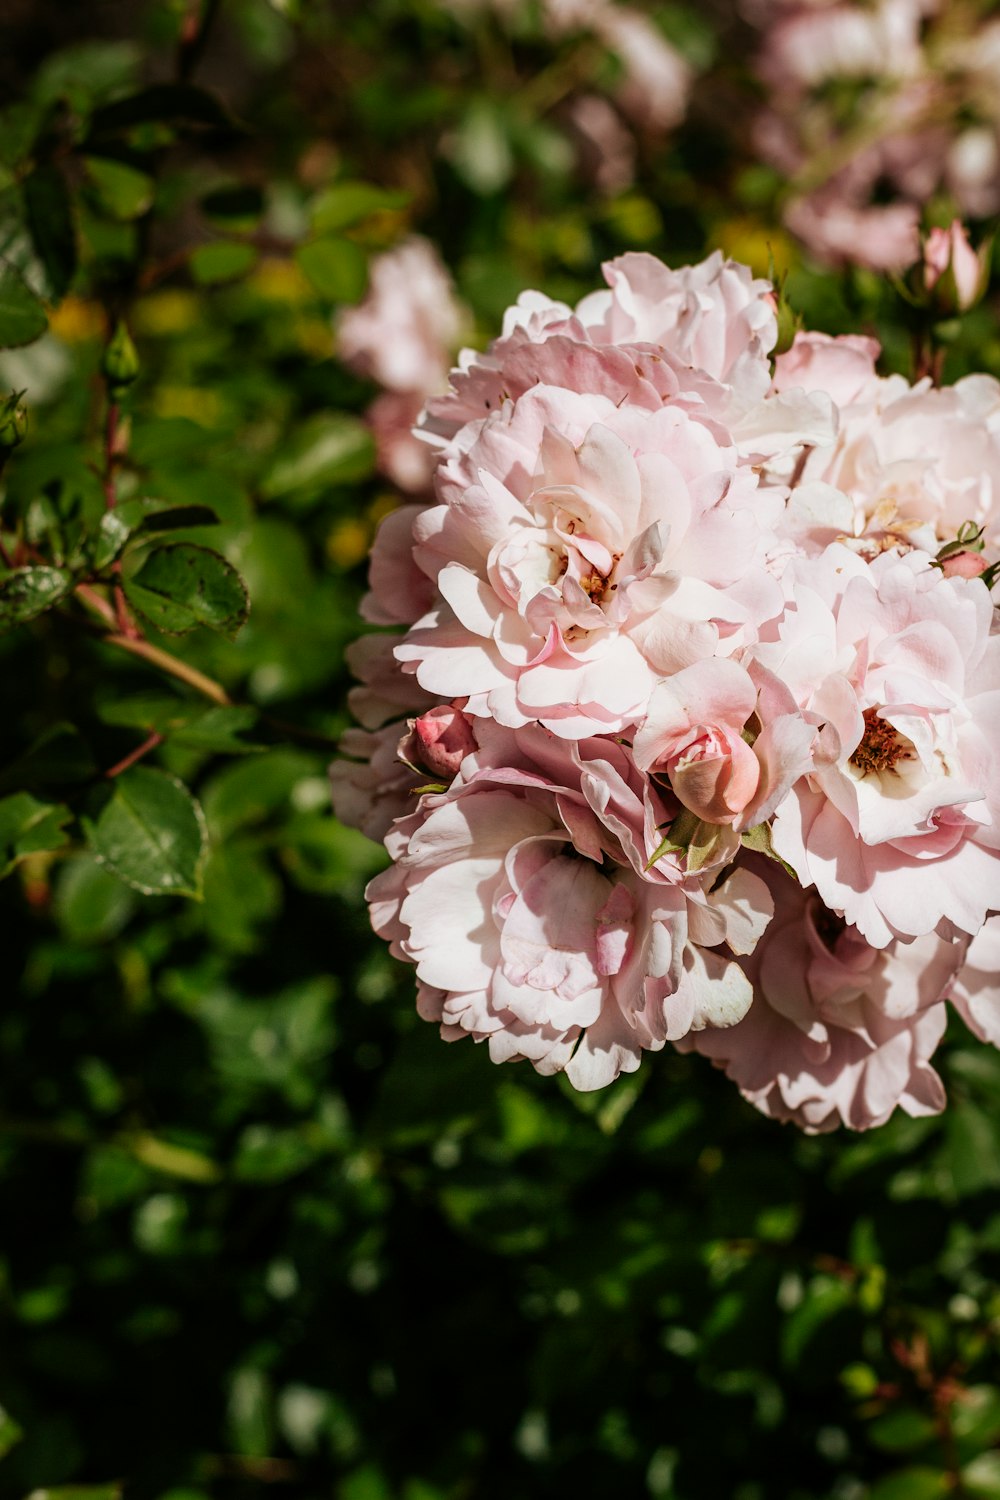 Flor rosa y blanca en lente de cambio de inclinación